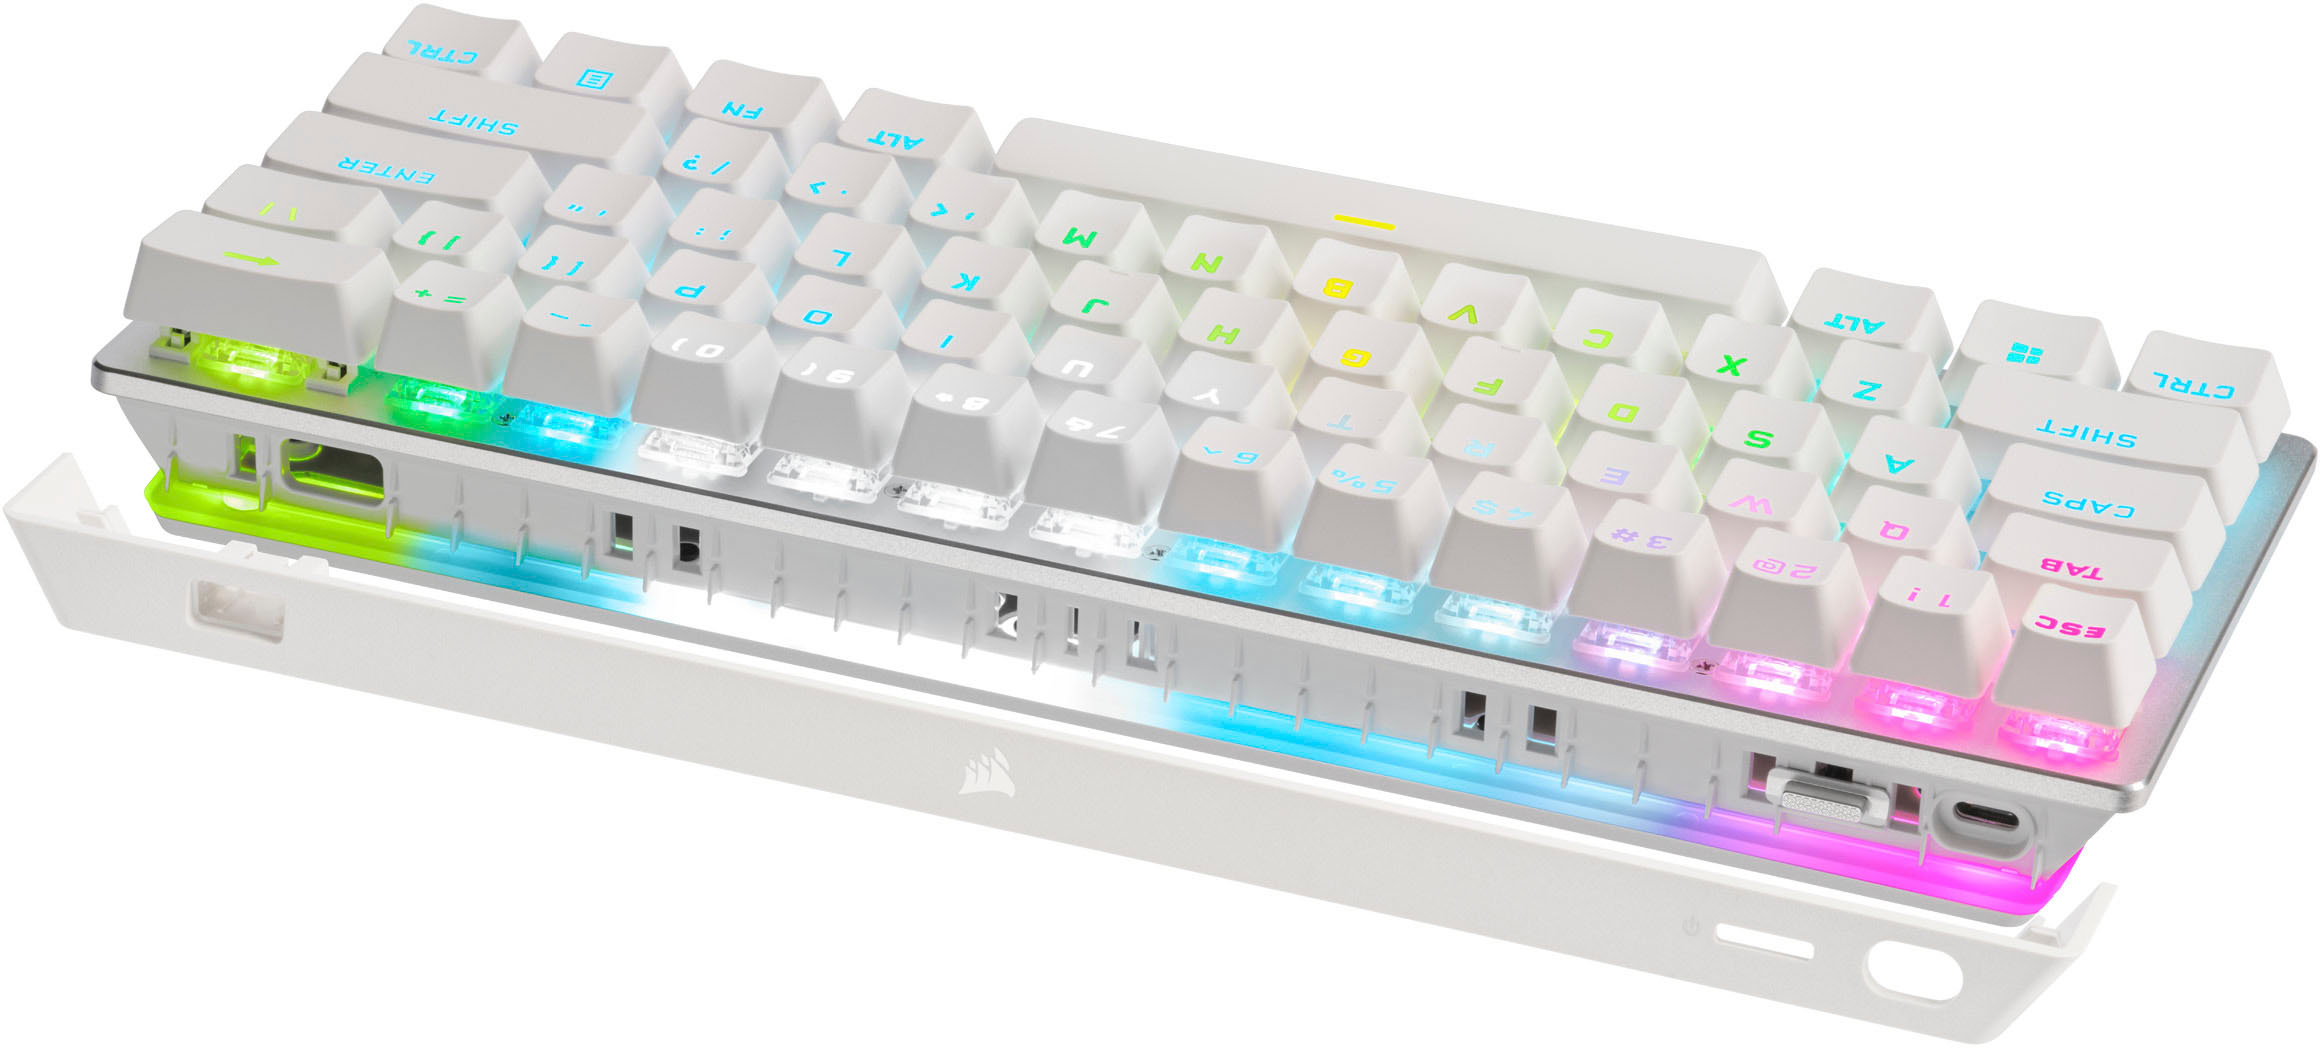 K70 PRO MINI WIRELESS 60% Mechanical CHERRY MX Speed Switch Keyboard with  RGB Backlighting - White (DE)